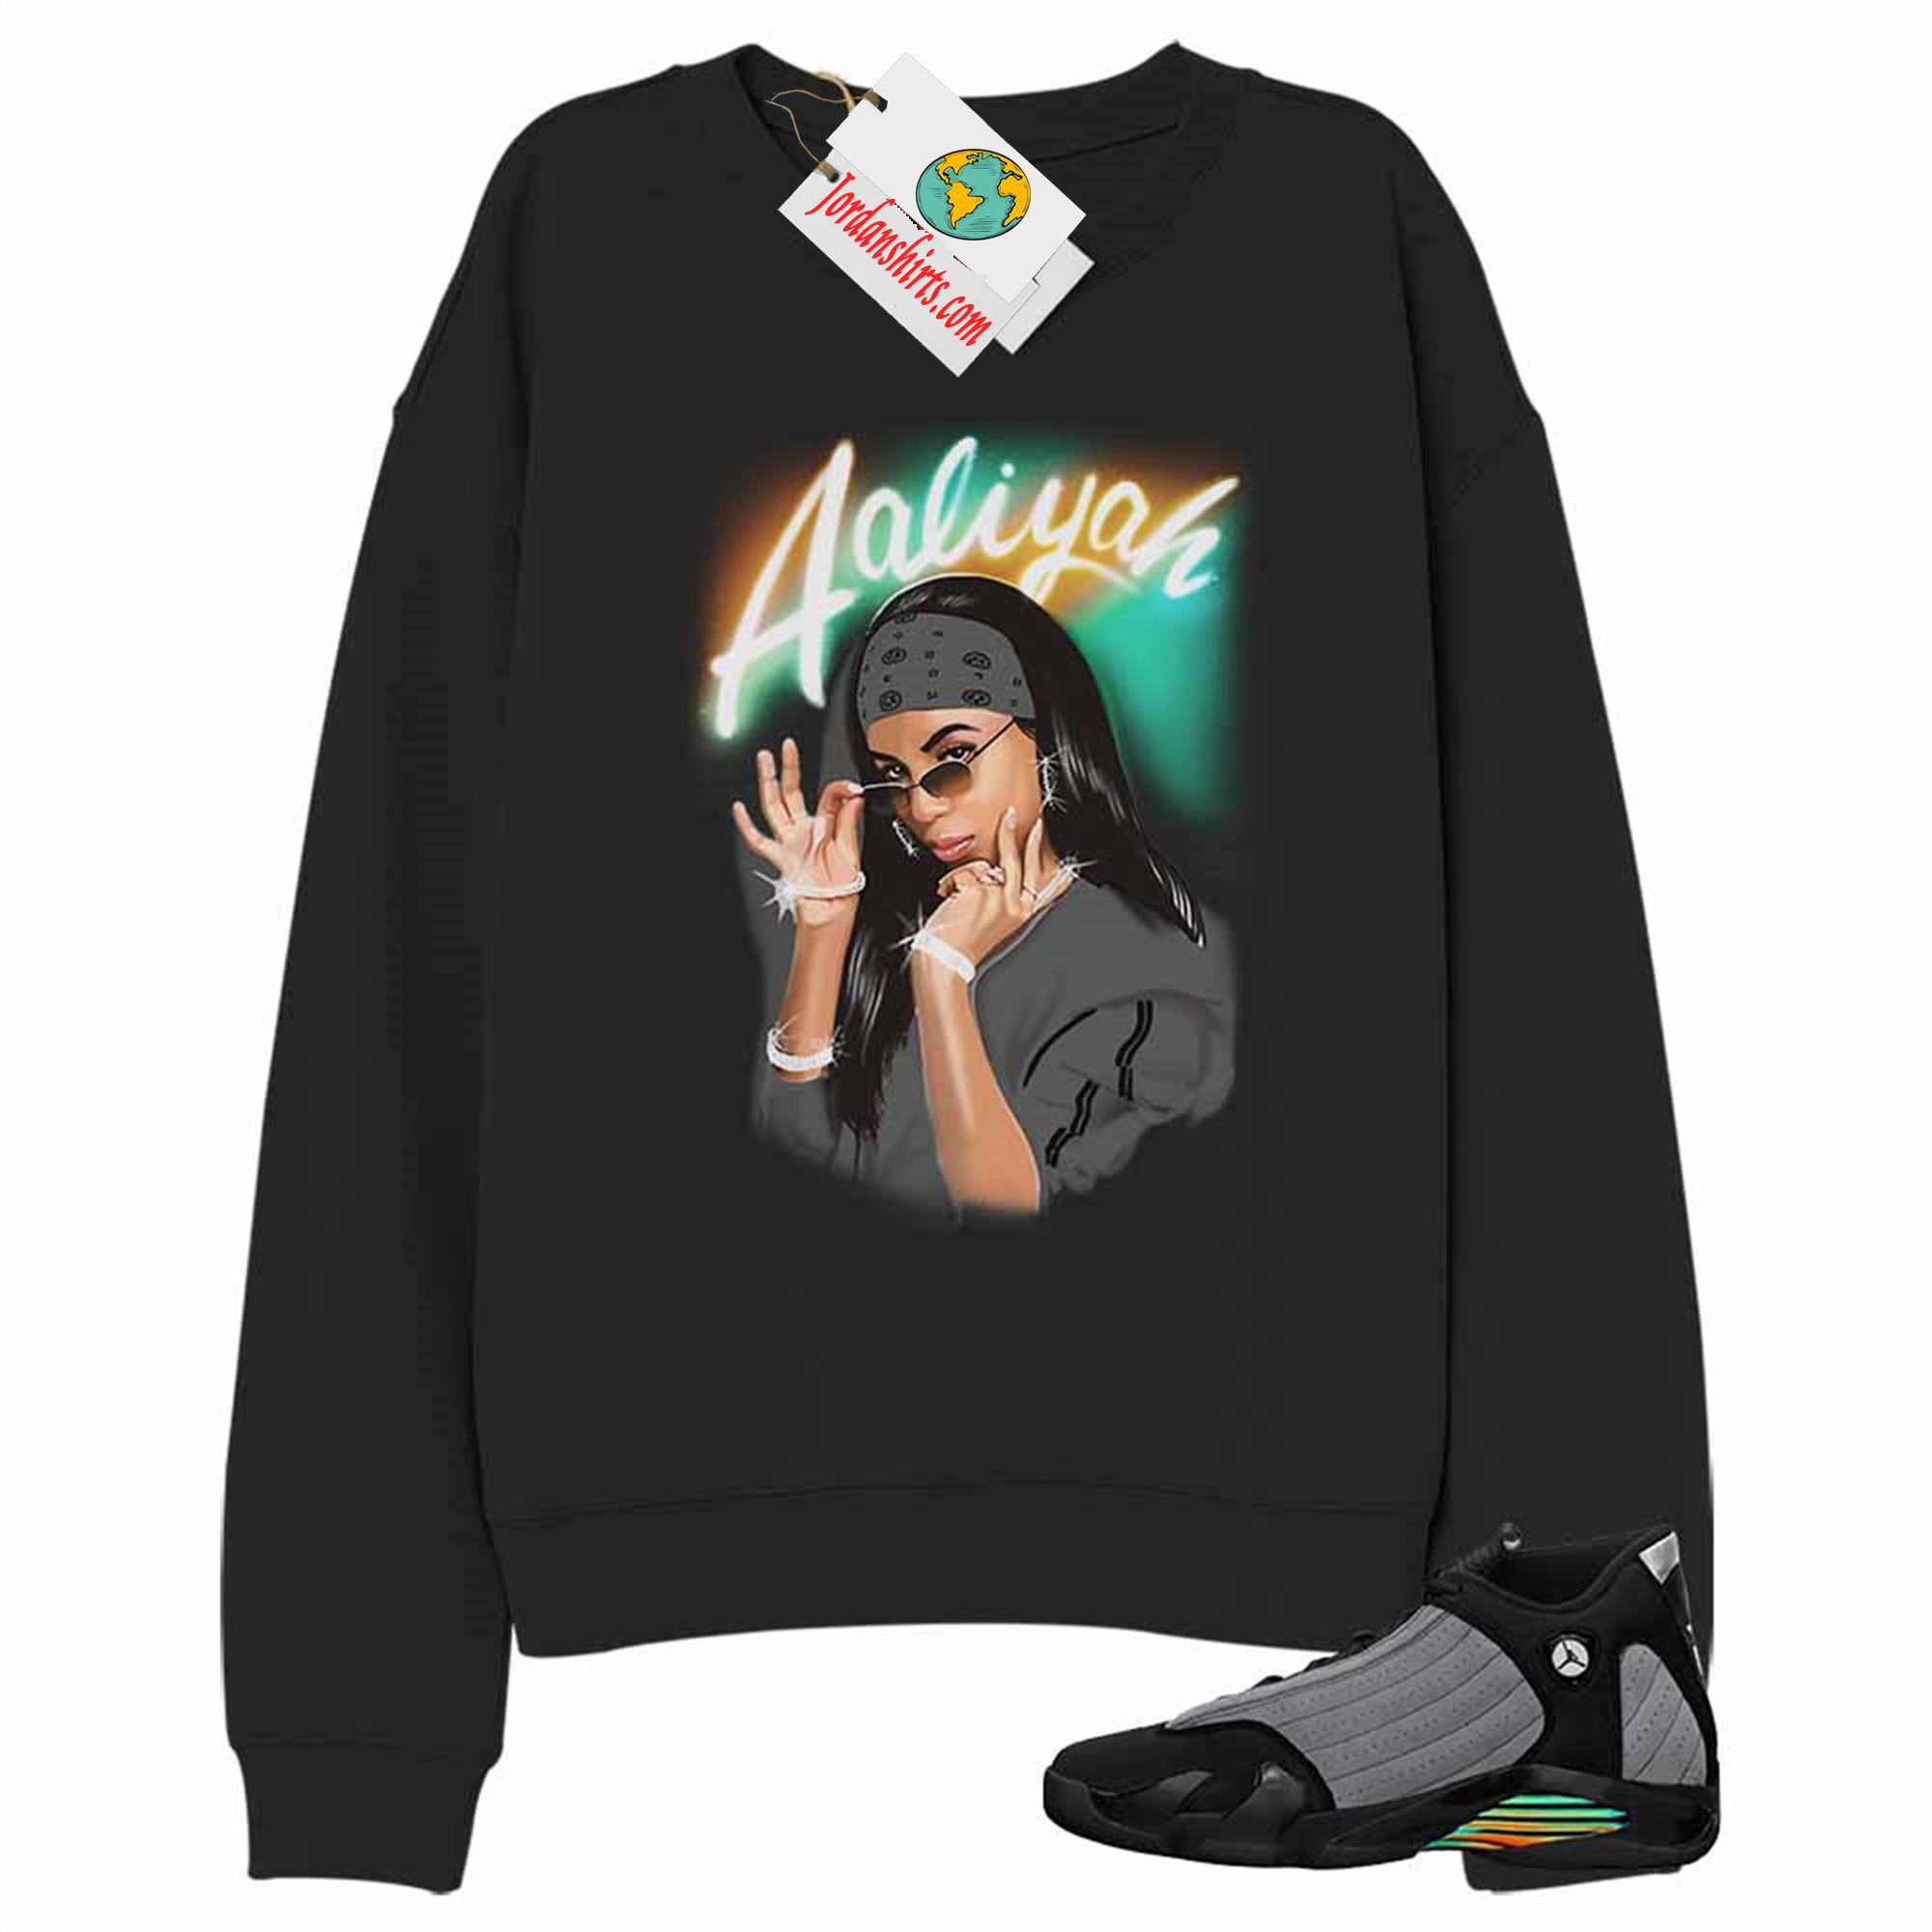 Jordan 14 Sweatshirt, Aaliyah Airbrush Black Sweatshirt Air Jordan 14 Black Particle Grey 14s Plus Size Up To 5xl